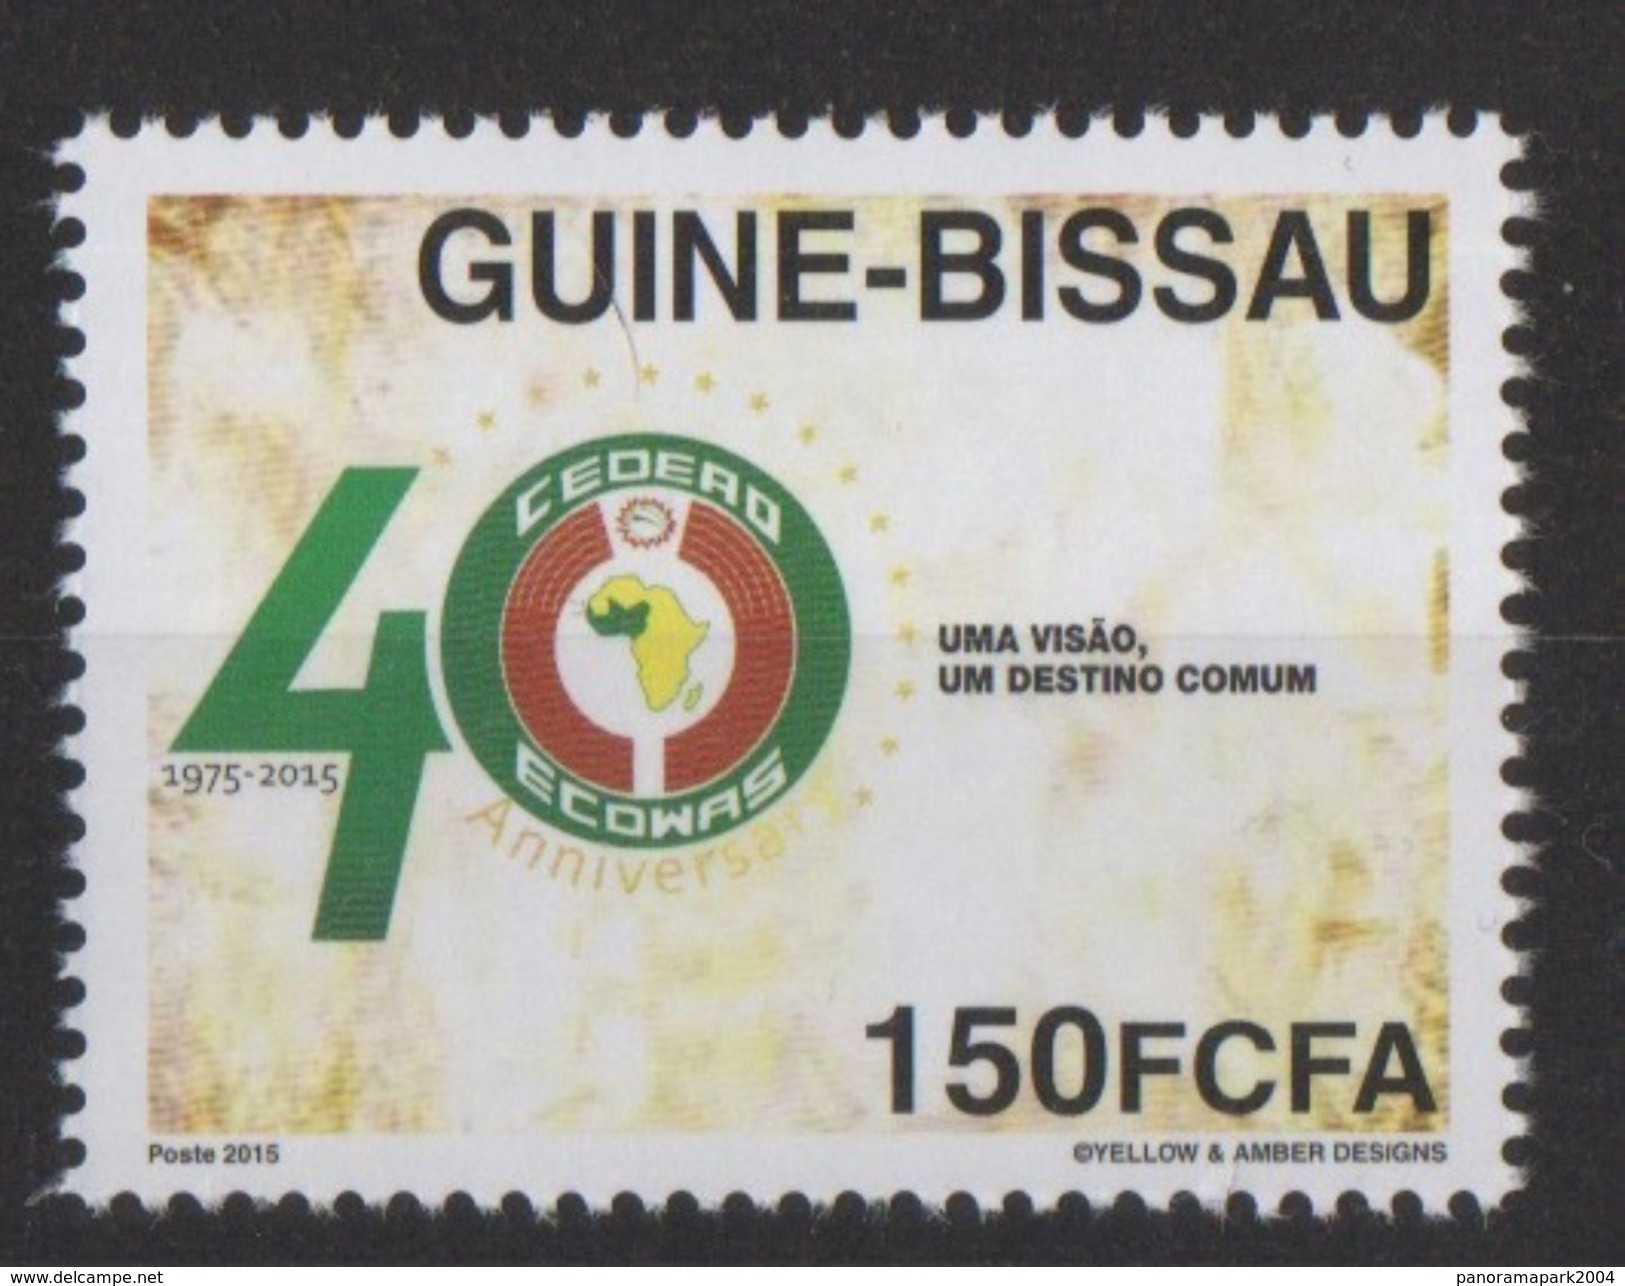 Guiné Bissau Guinea Guinée 2015 Emission Commune Joint Issue CEDEAO ECOWAS 40 Ans 40 Years - Emissions Communes